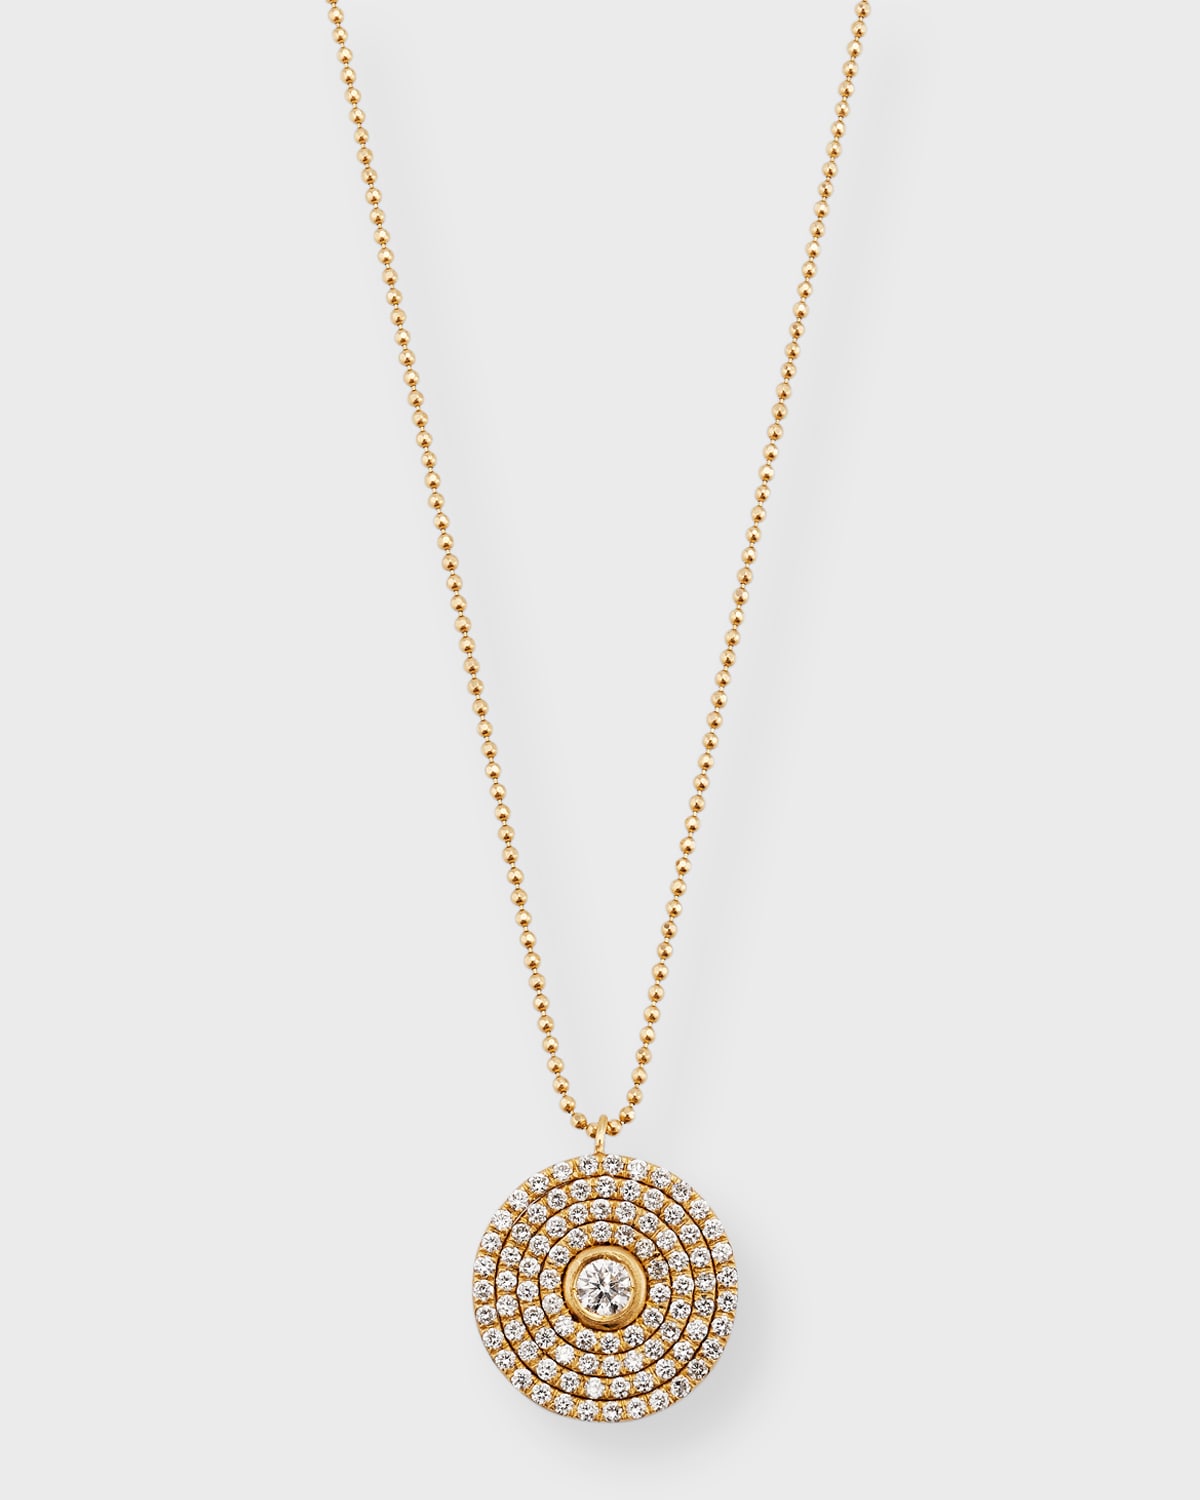 Dominique Cohen 18k Gold Mosaic Diamond Pendant Necklace (Large)